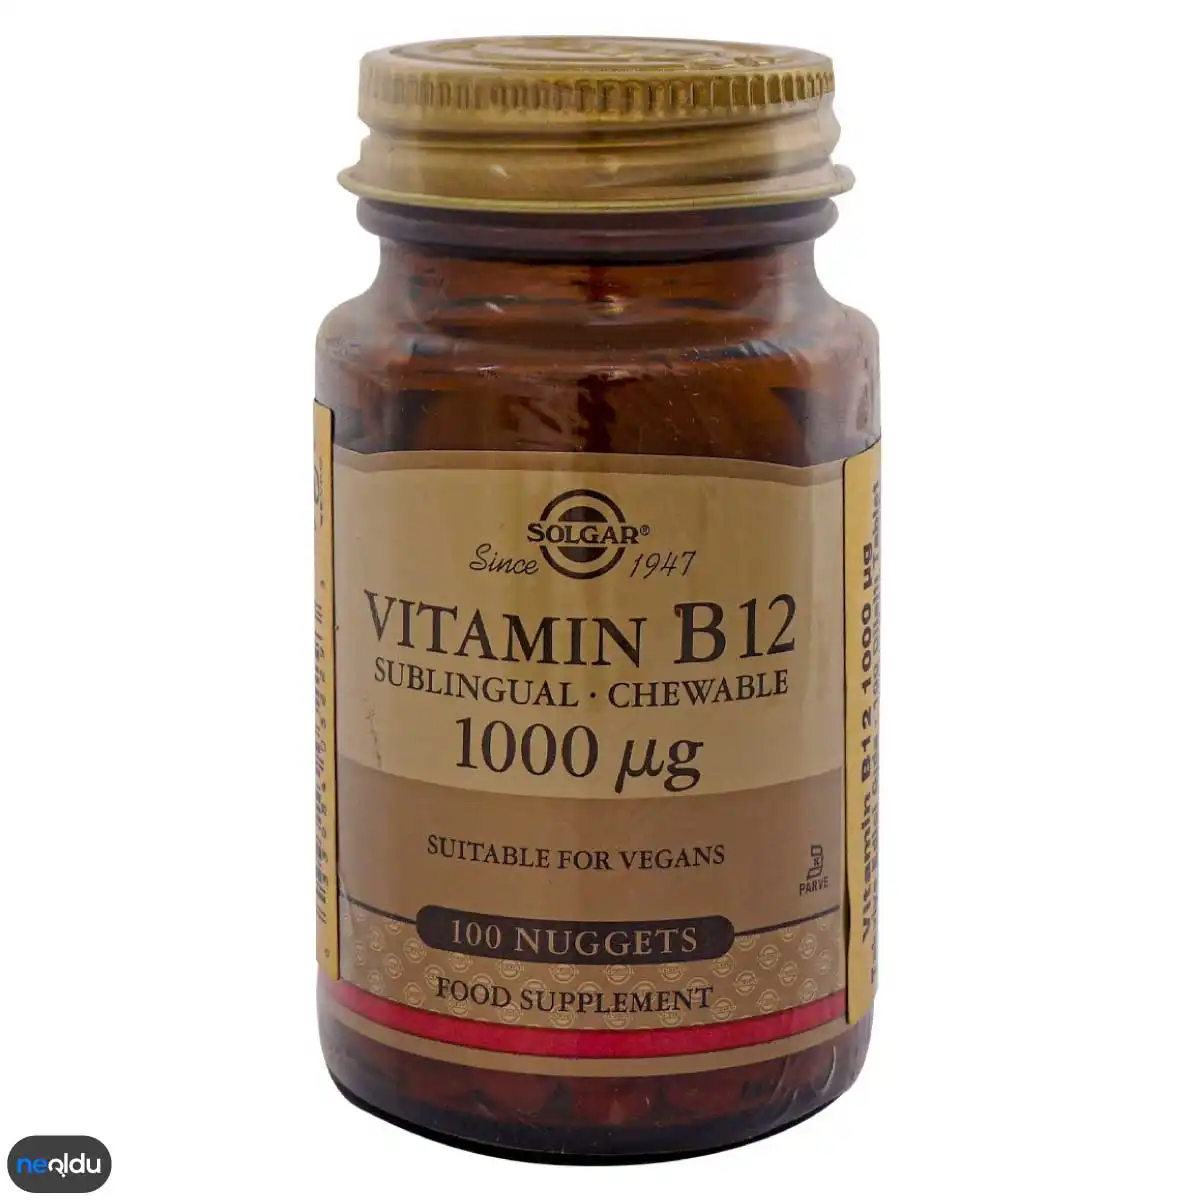 B12 Vitamini İçeren Ürünler